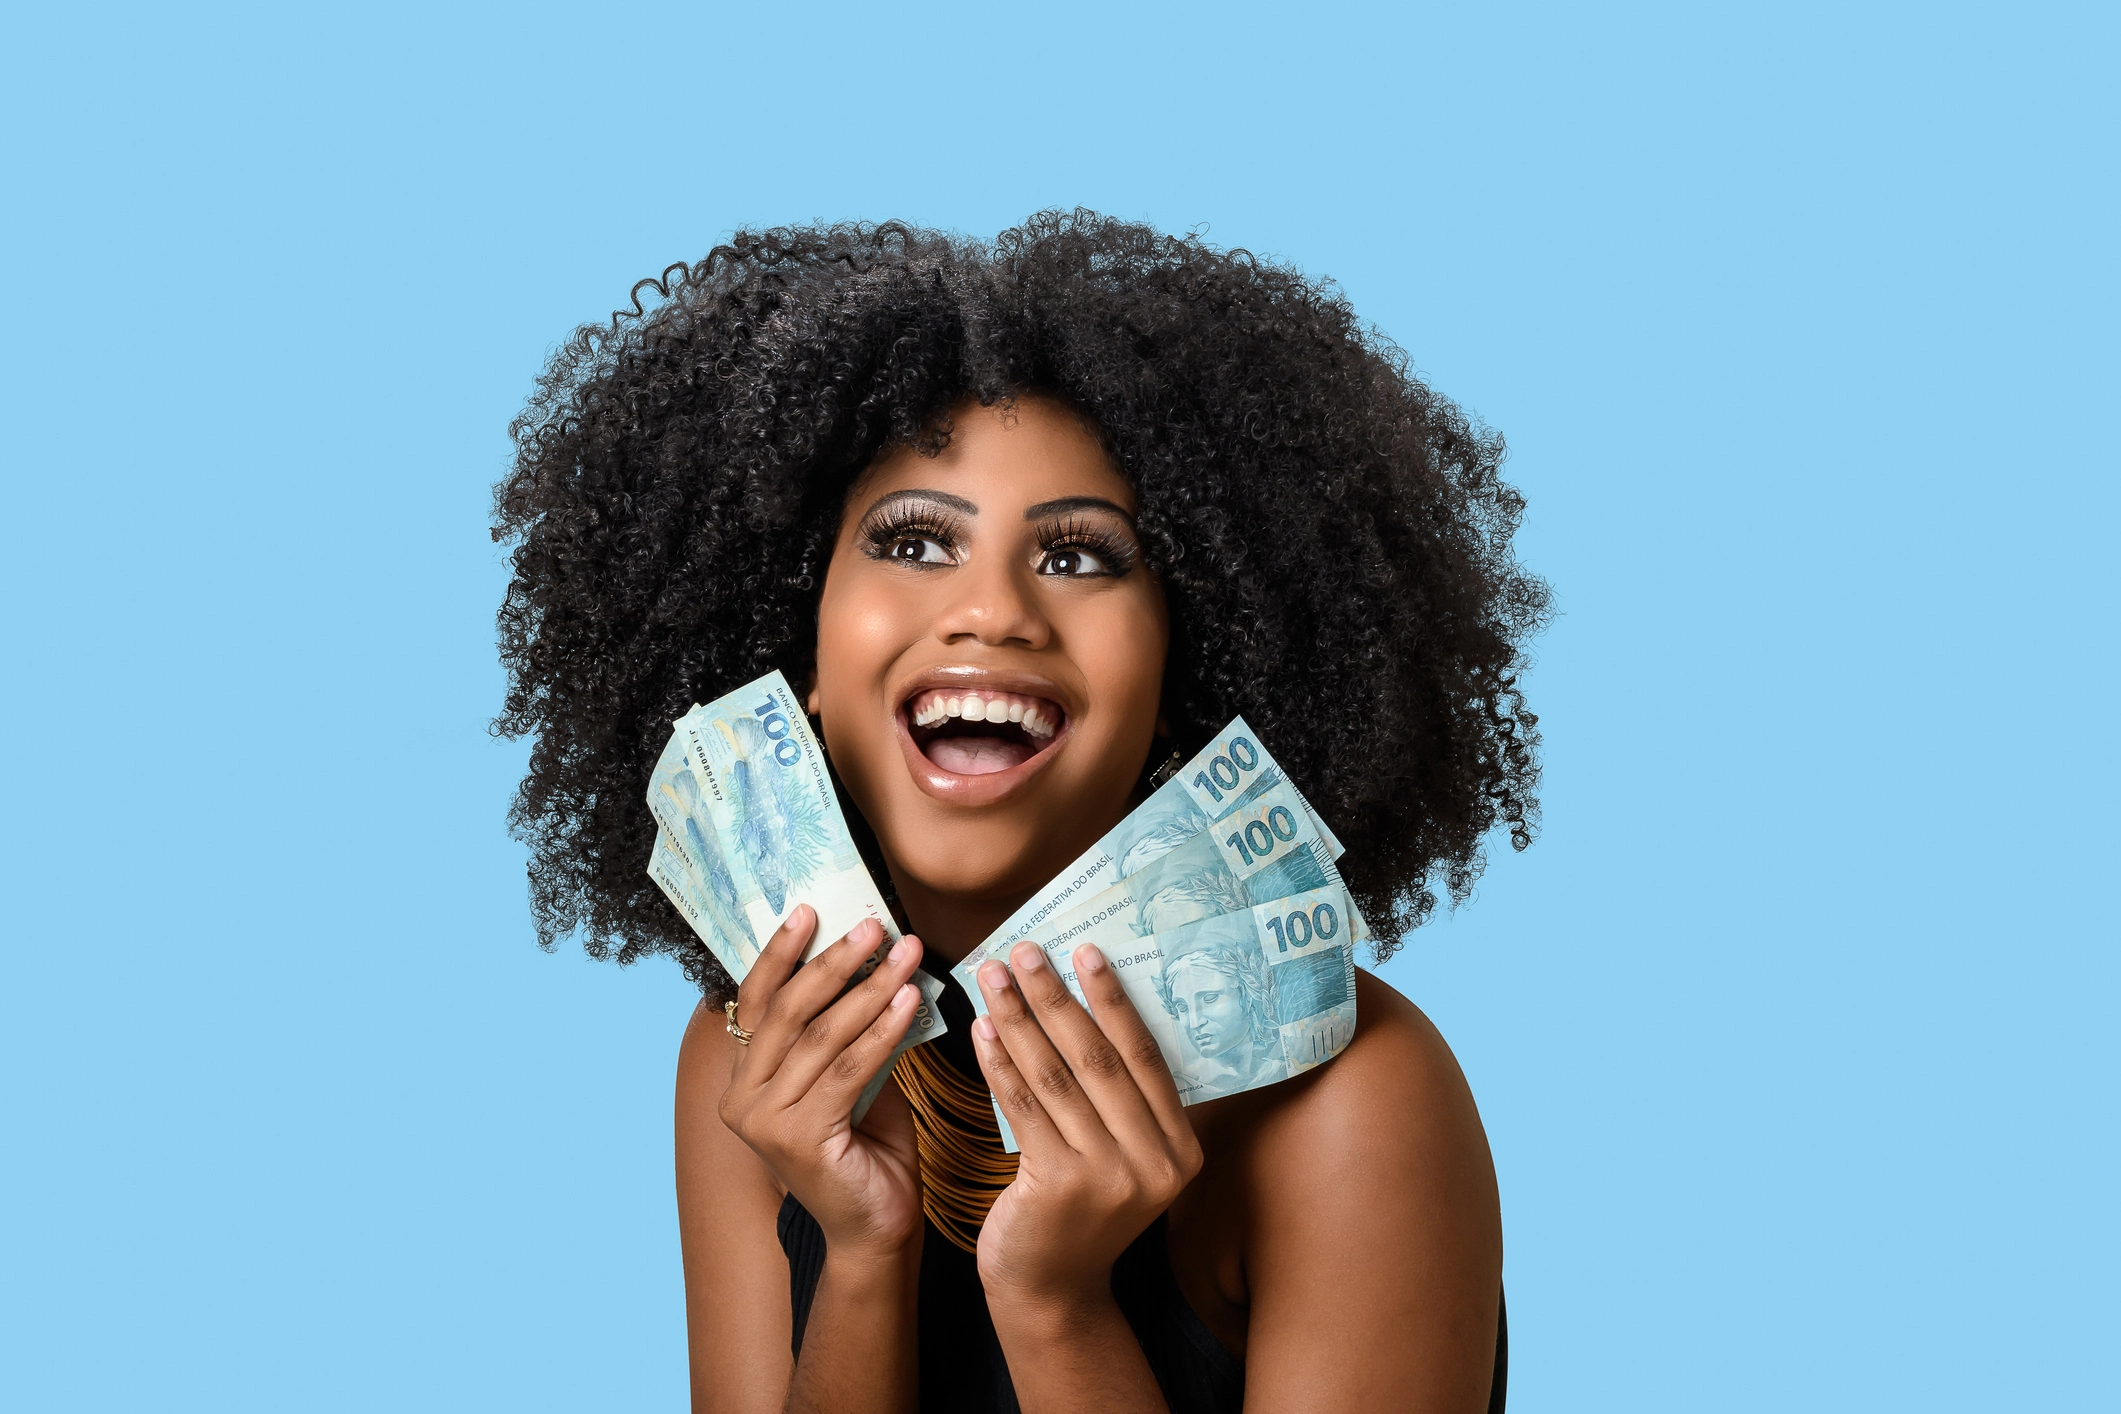 Jovem negra sorrindo segurando contas de dinheiro brasileiro, positivamente surpreendida, isolada no fundo azul.